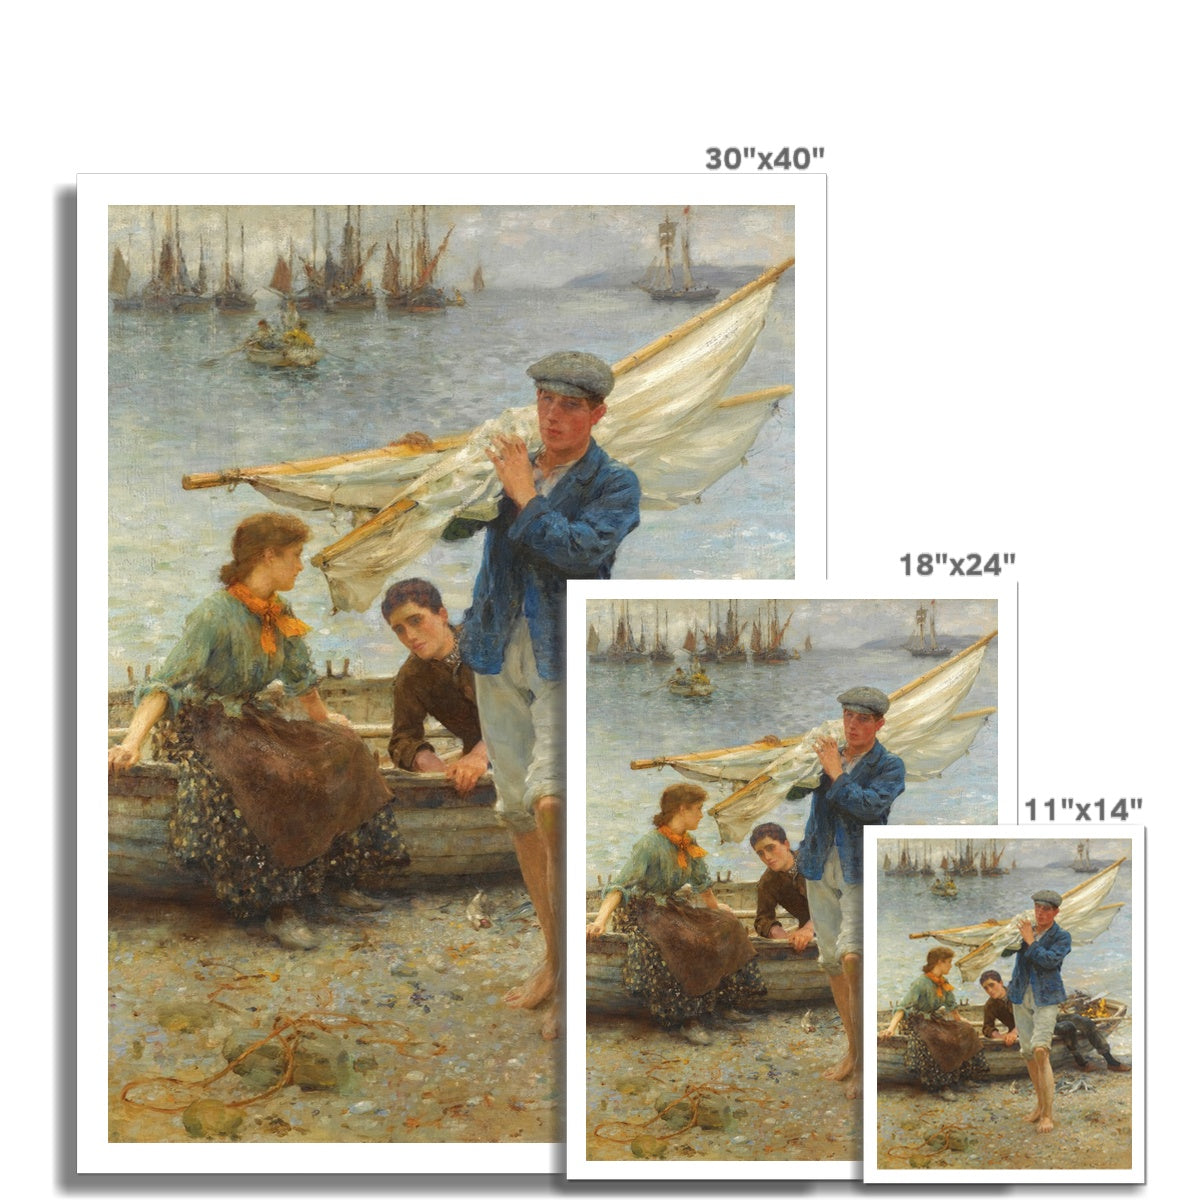 Henry Scott Tuke Open Edition Art Print. Return from Fishing. Art Gallery Historic Art